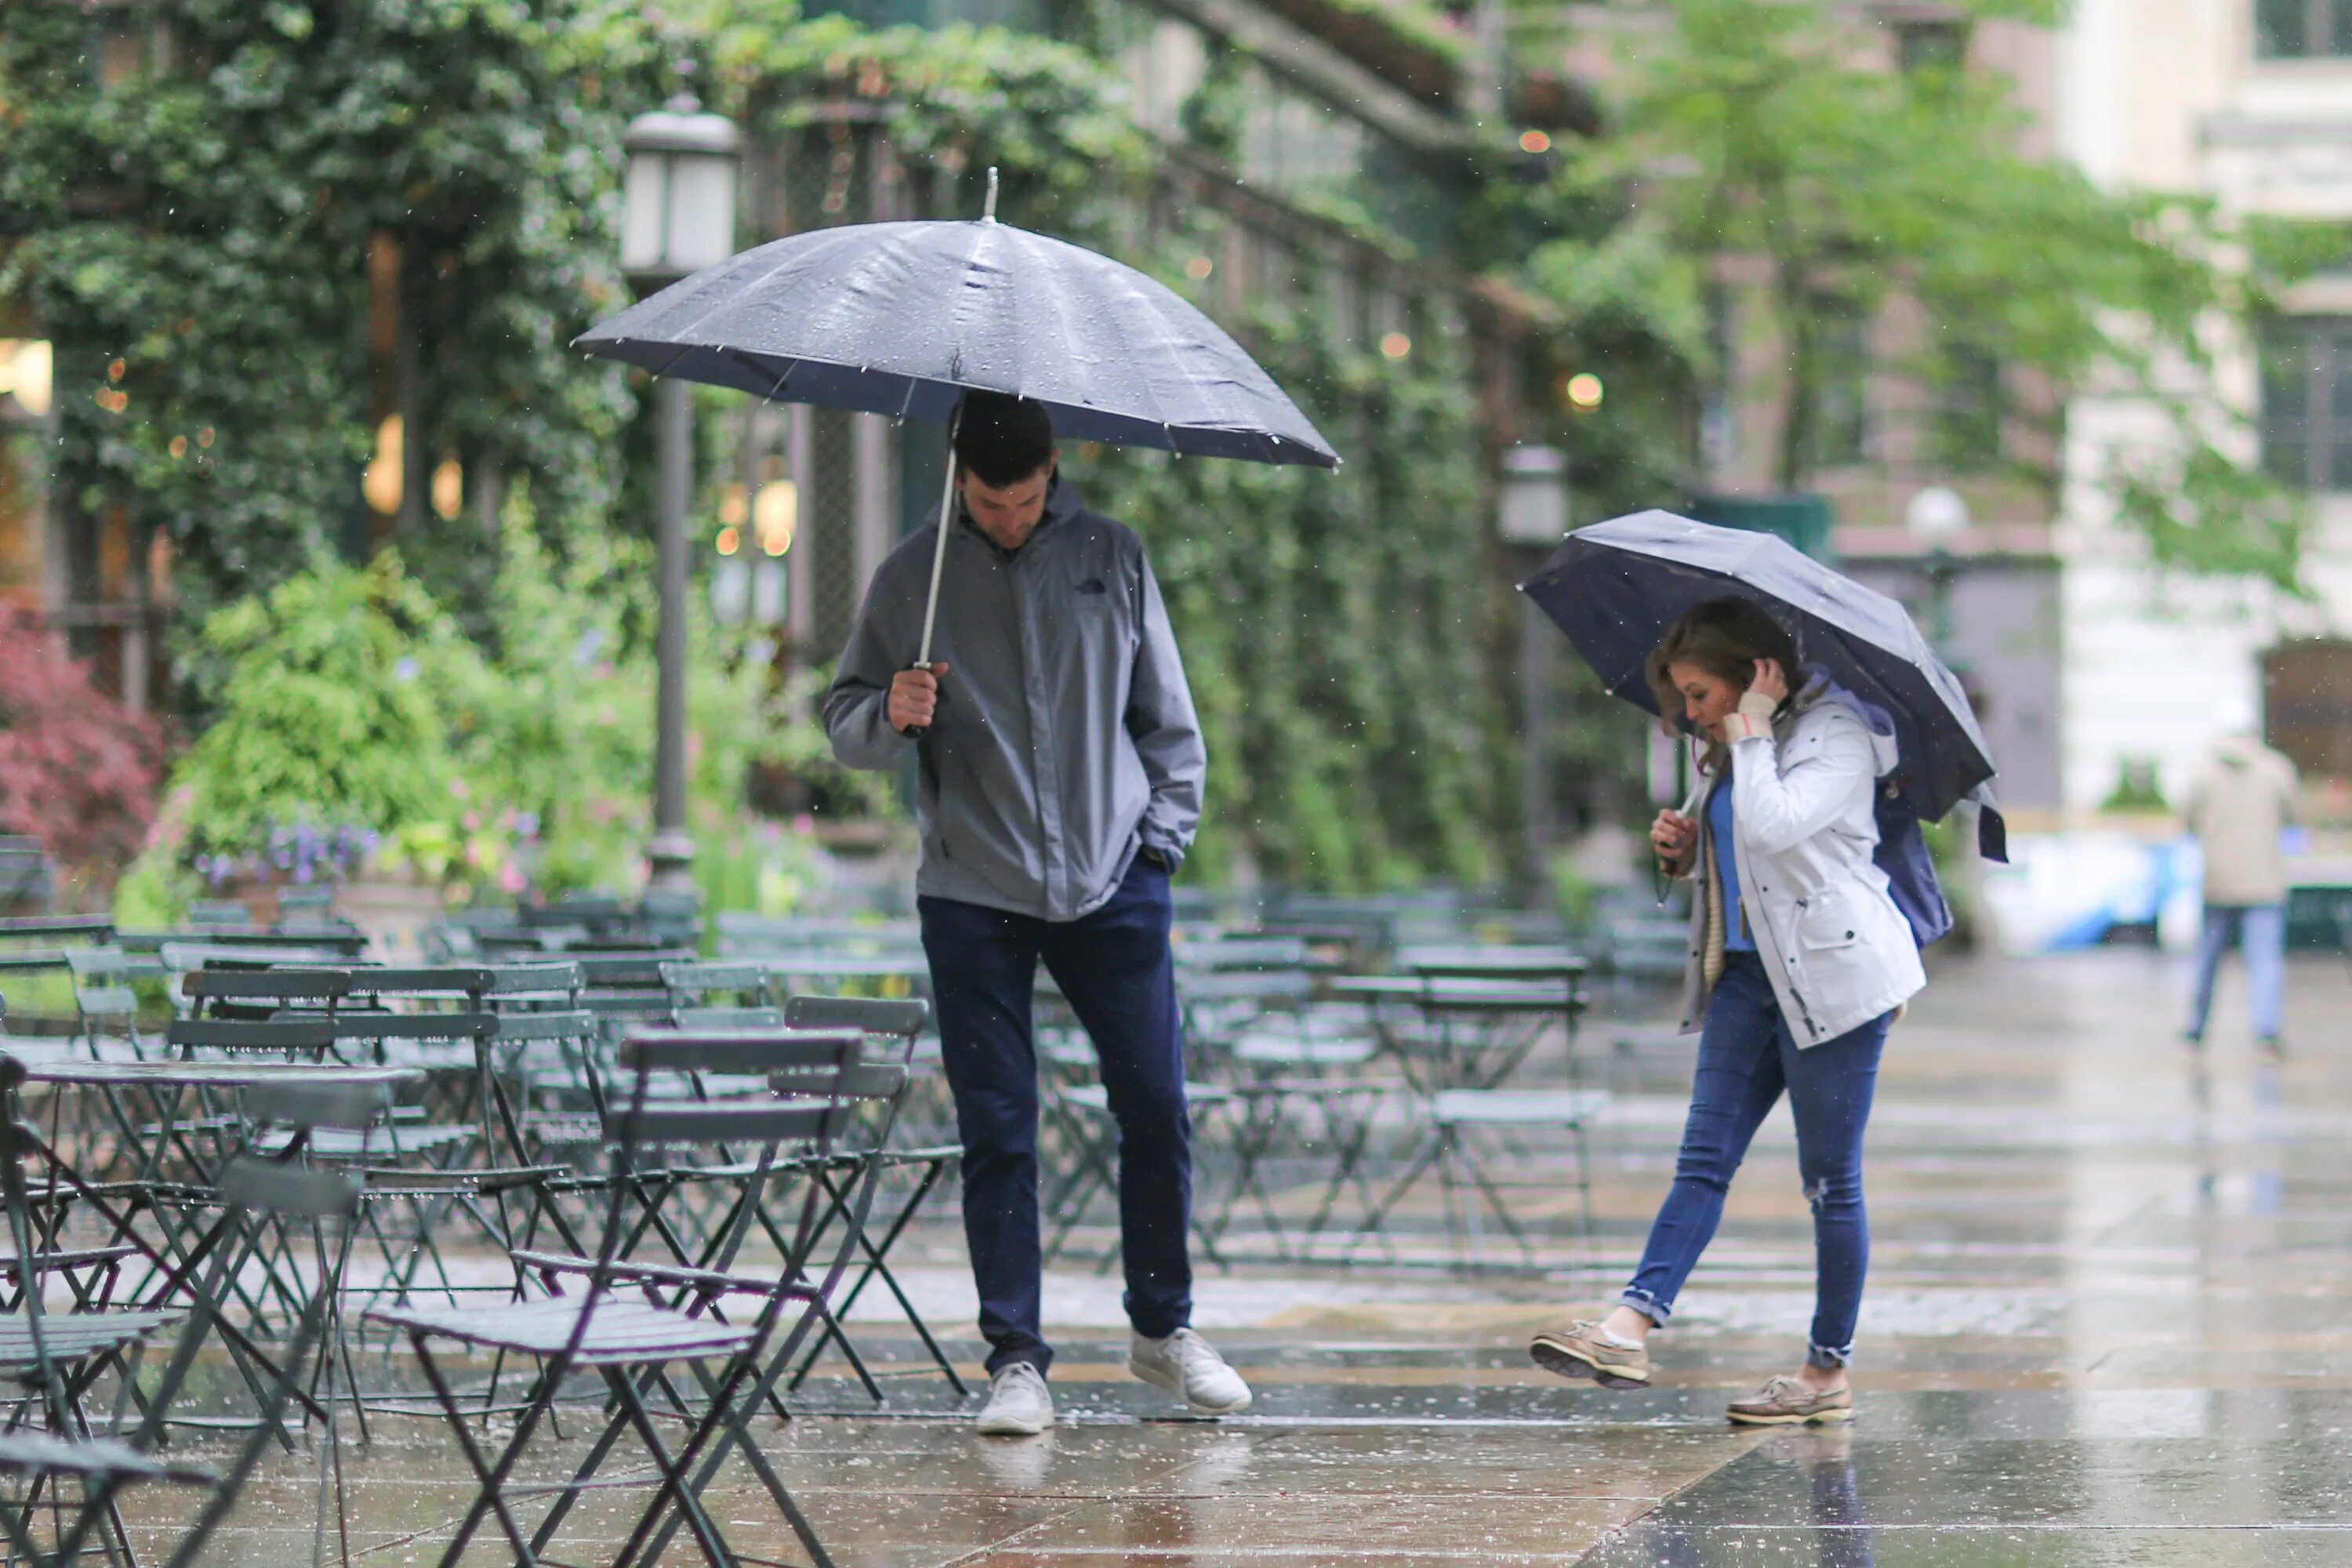 Мс дождь. Улица дождь парк зонт. В парке дождь и зонт лежит. People in the Rain. Rain in Street.